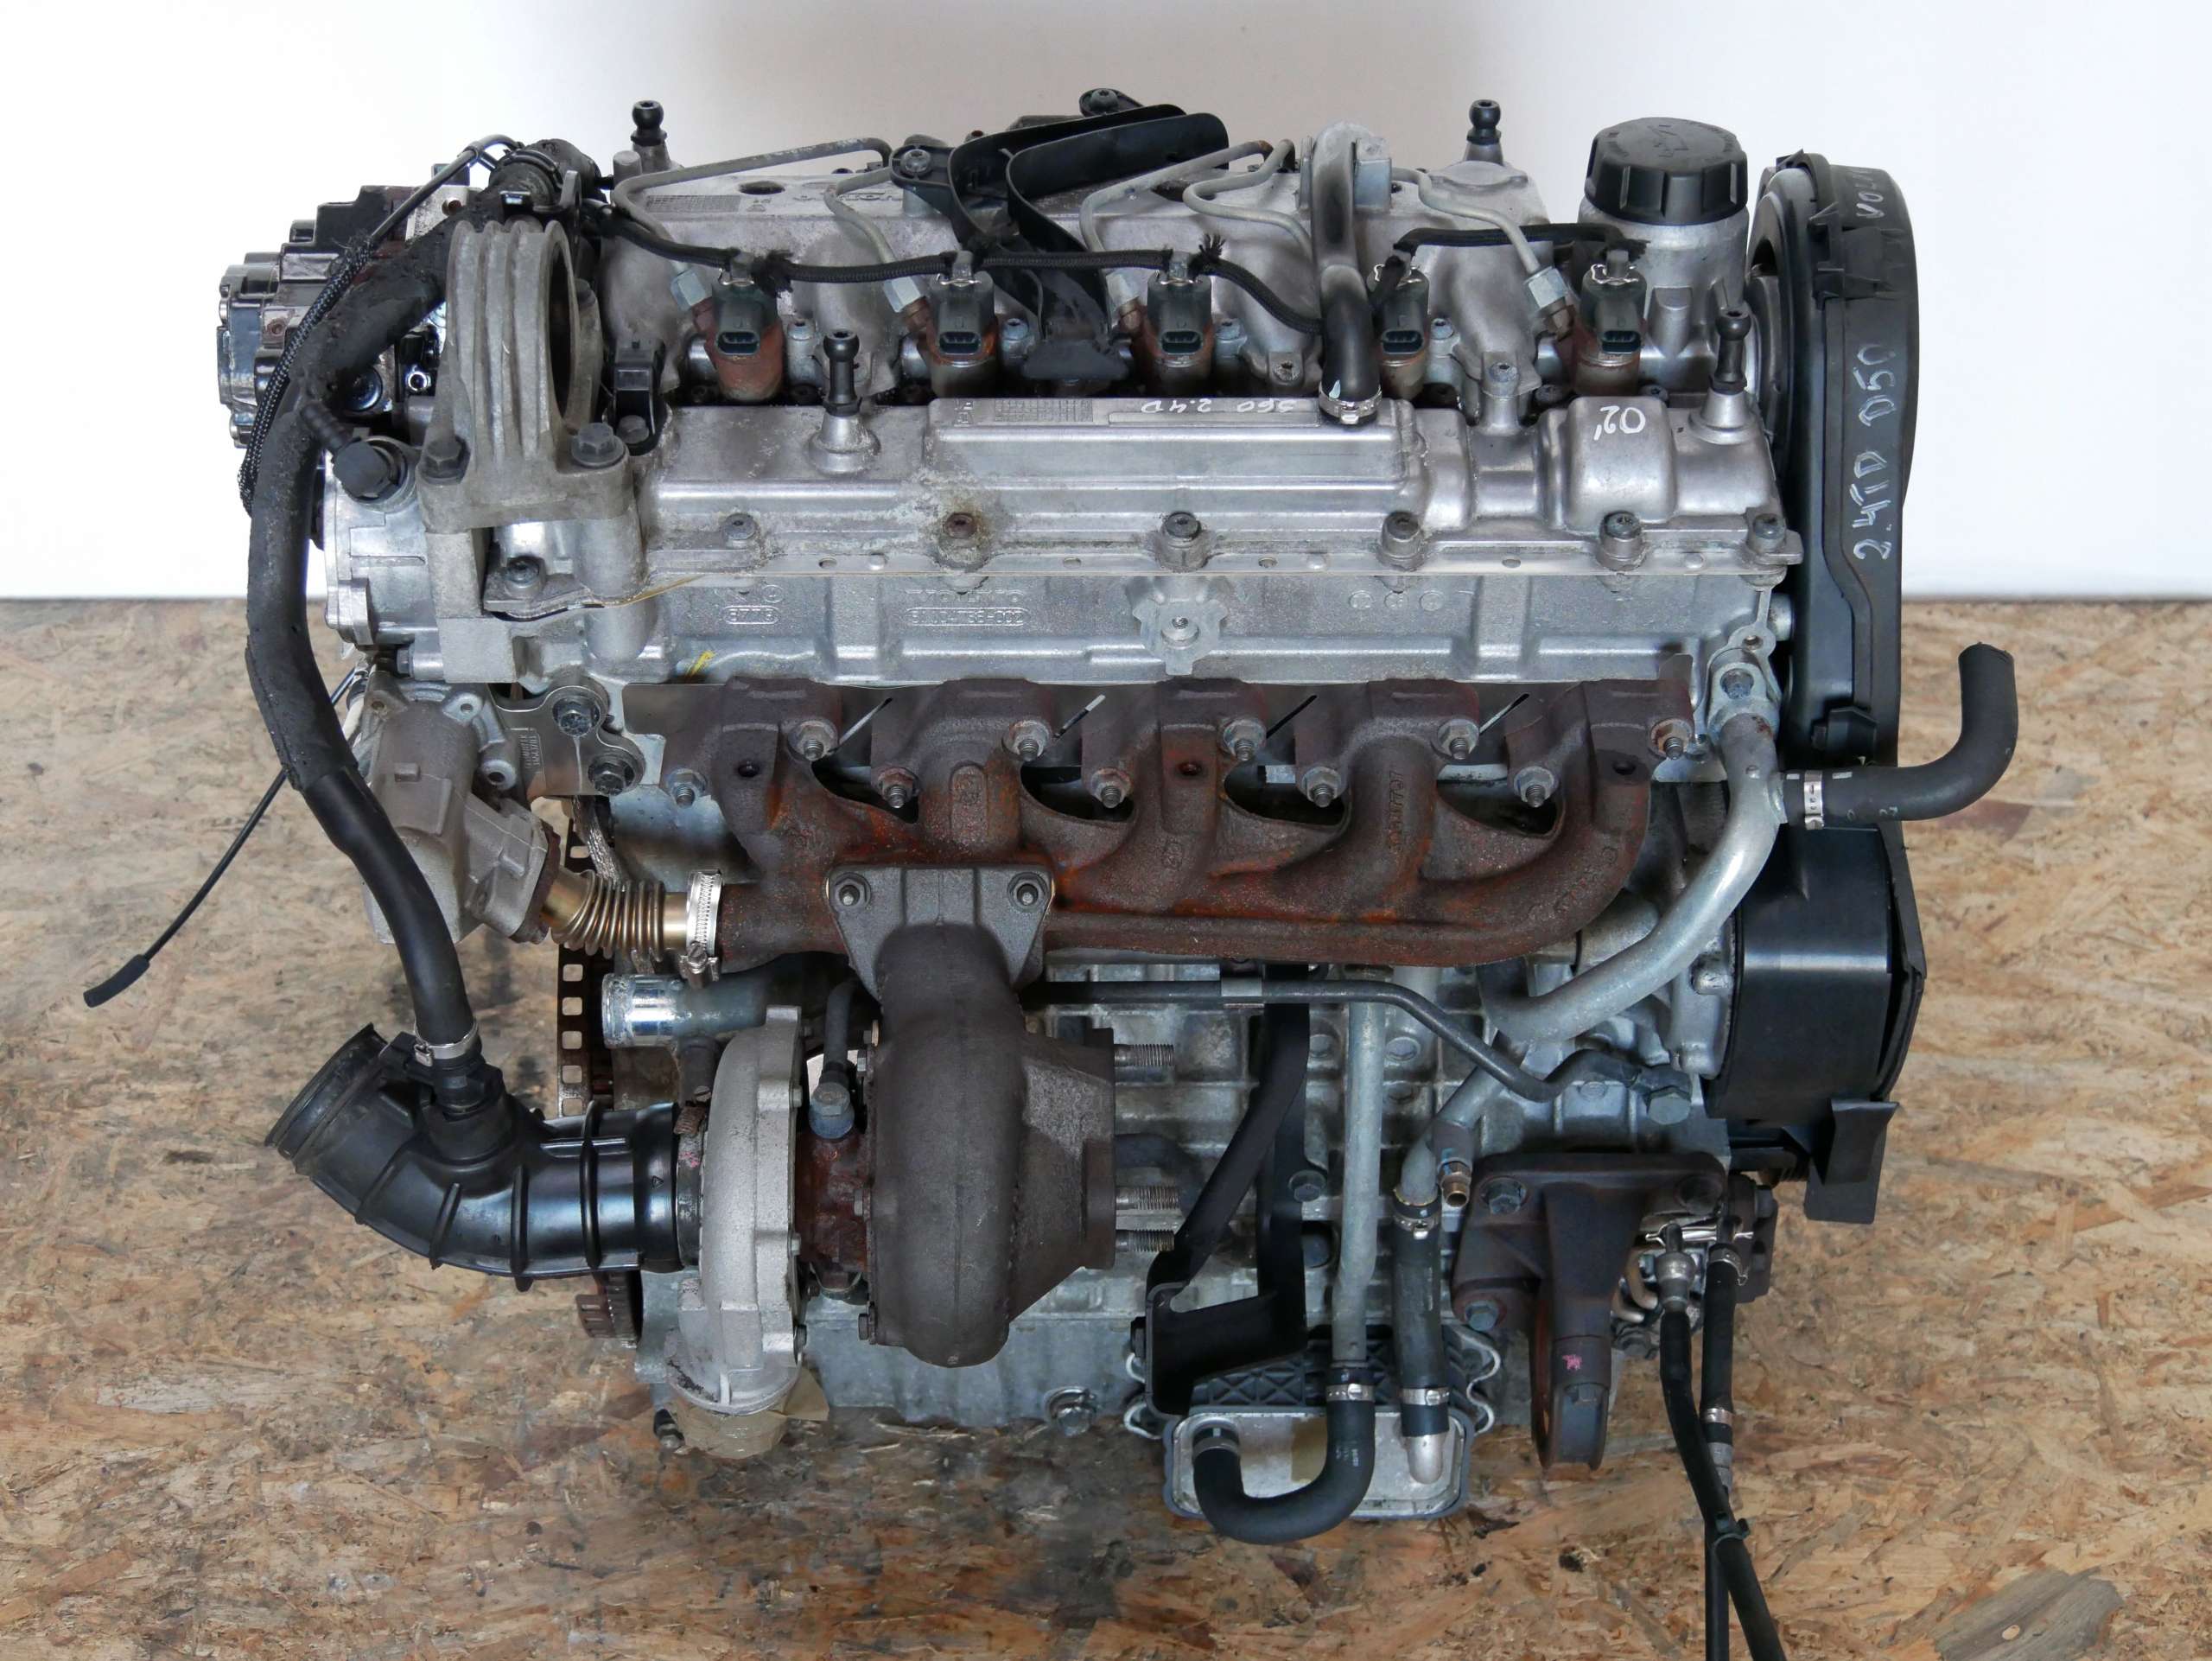 Volvo s60 двигатели. Мотор 2.4 Вольво s60. Двигатель Вольво s60. Двигатель Volvo s60 2.4. Volvo d5244t 2.4 литра..